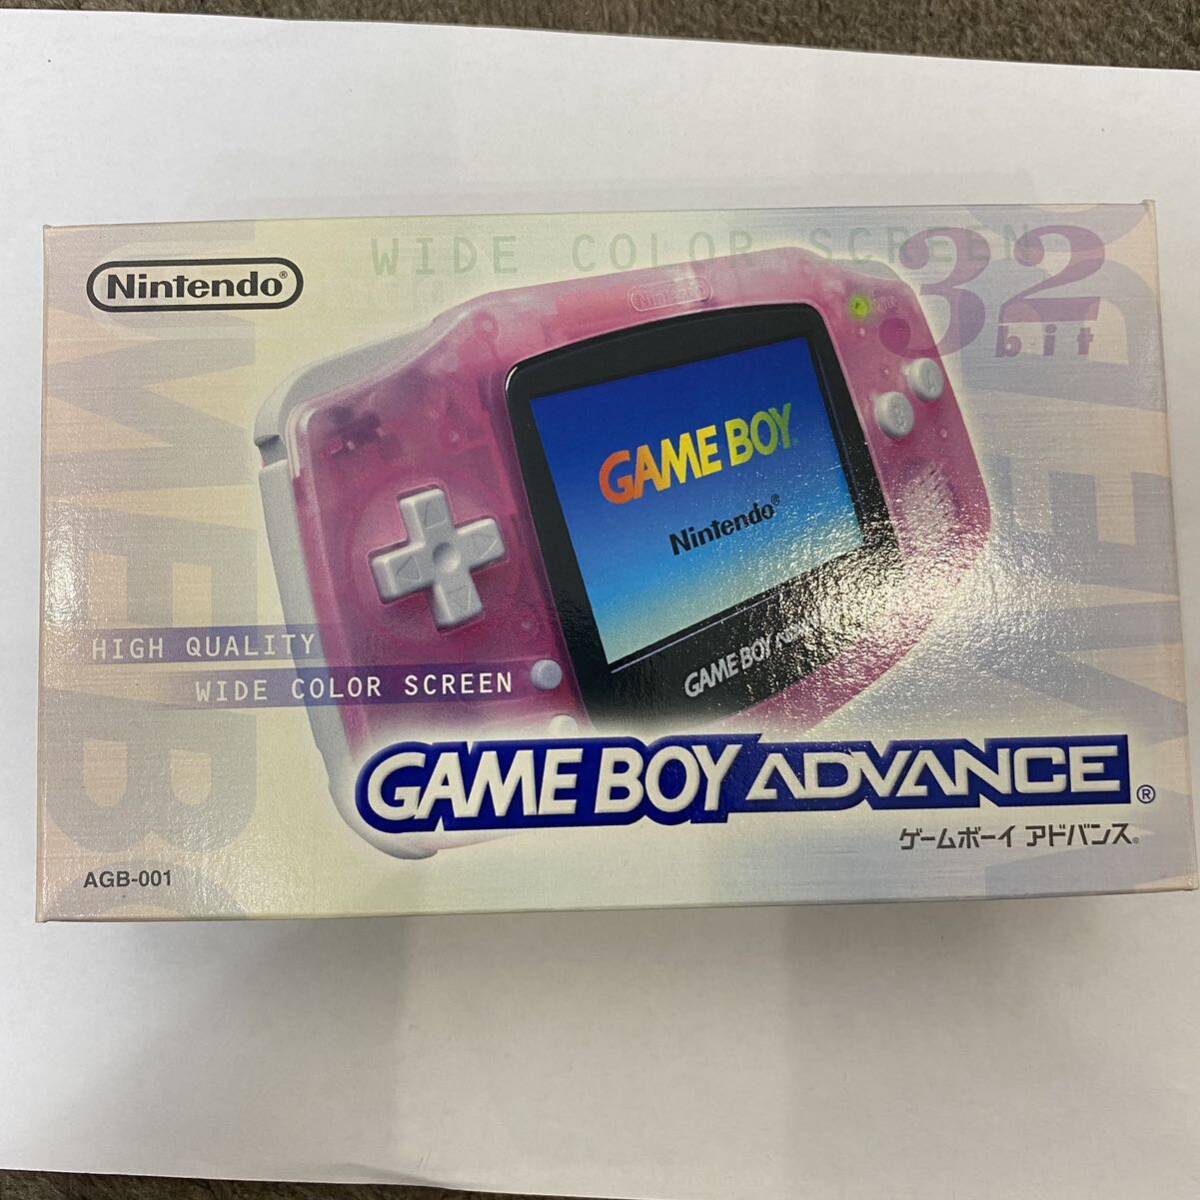  новый товар Game Boy Advance редкость Mill ключ розовый GBA nintendo инструкция коробка рекламная листовка Nintendo Nintendo Game Boy превосходный товар 